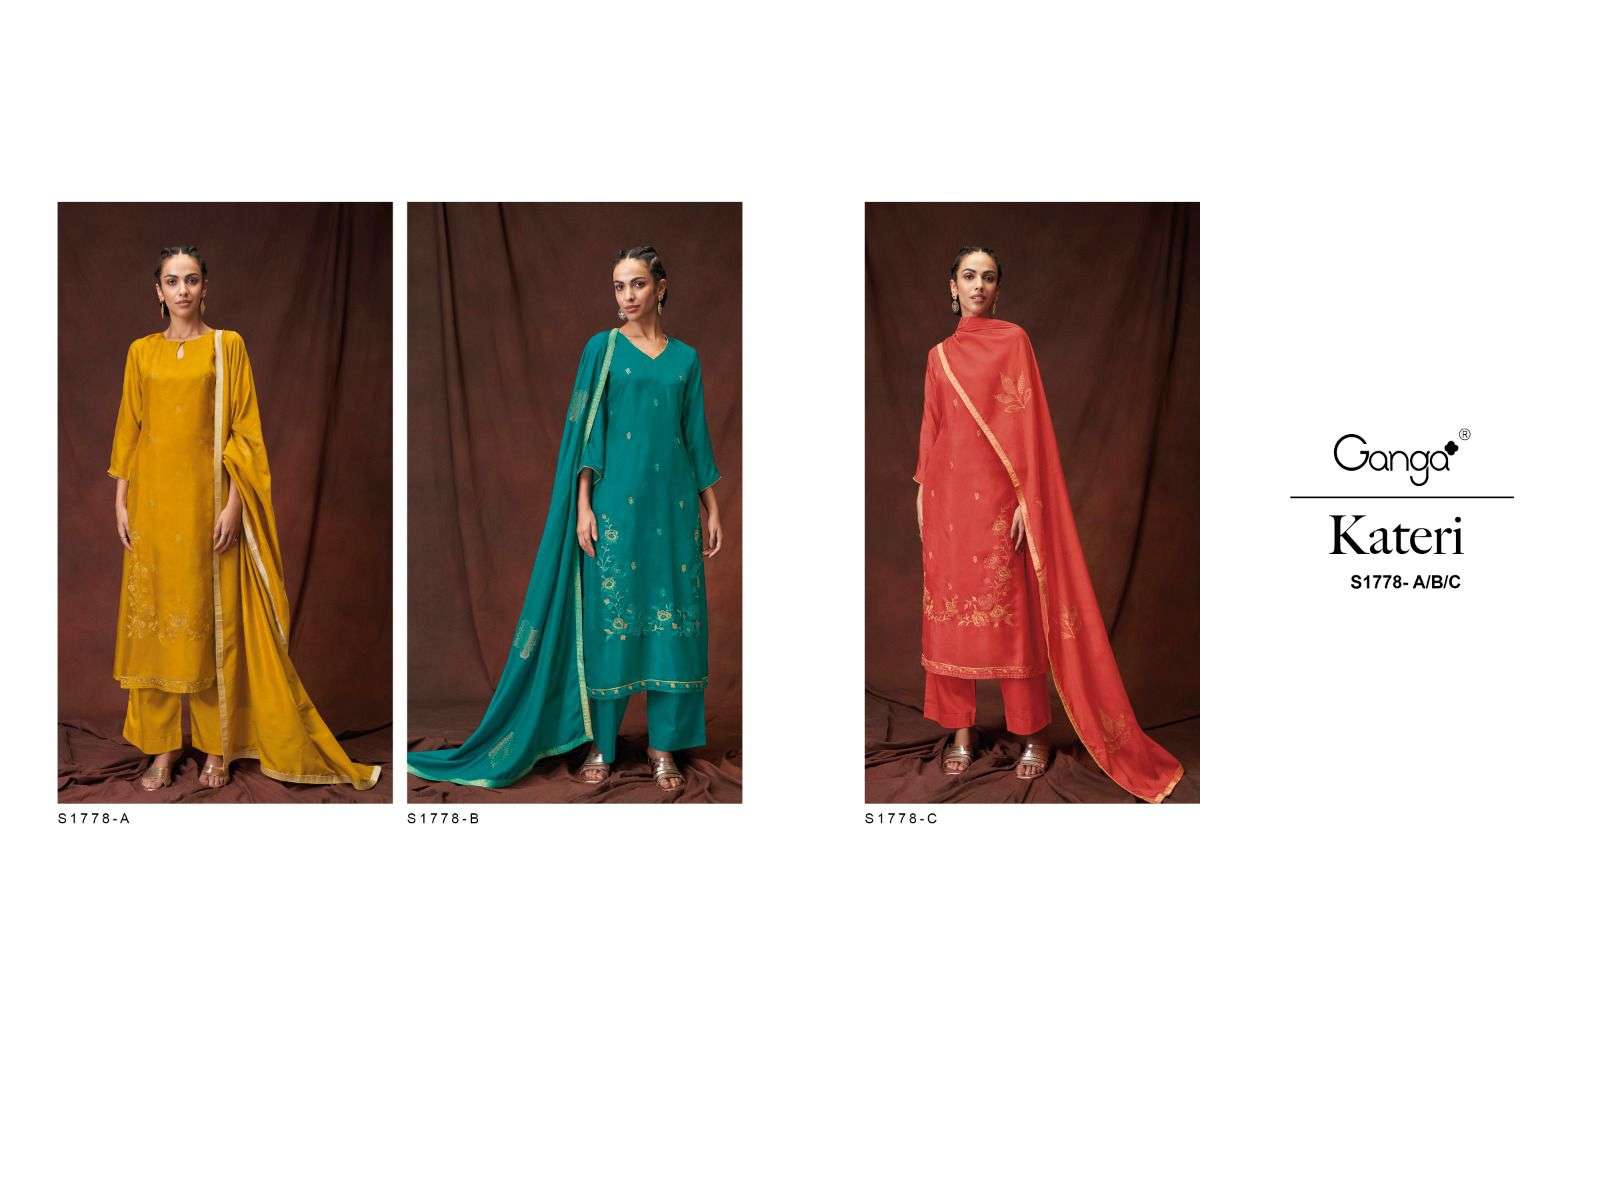 ganga kateri 1778 series exclusive designer salwar kameez catalogue wholesaler surat